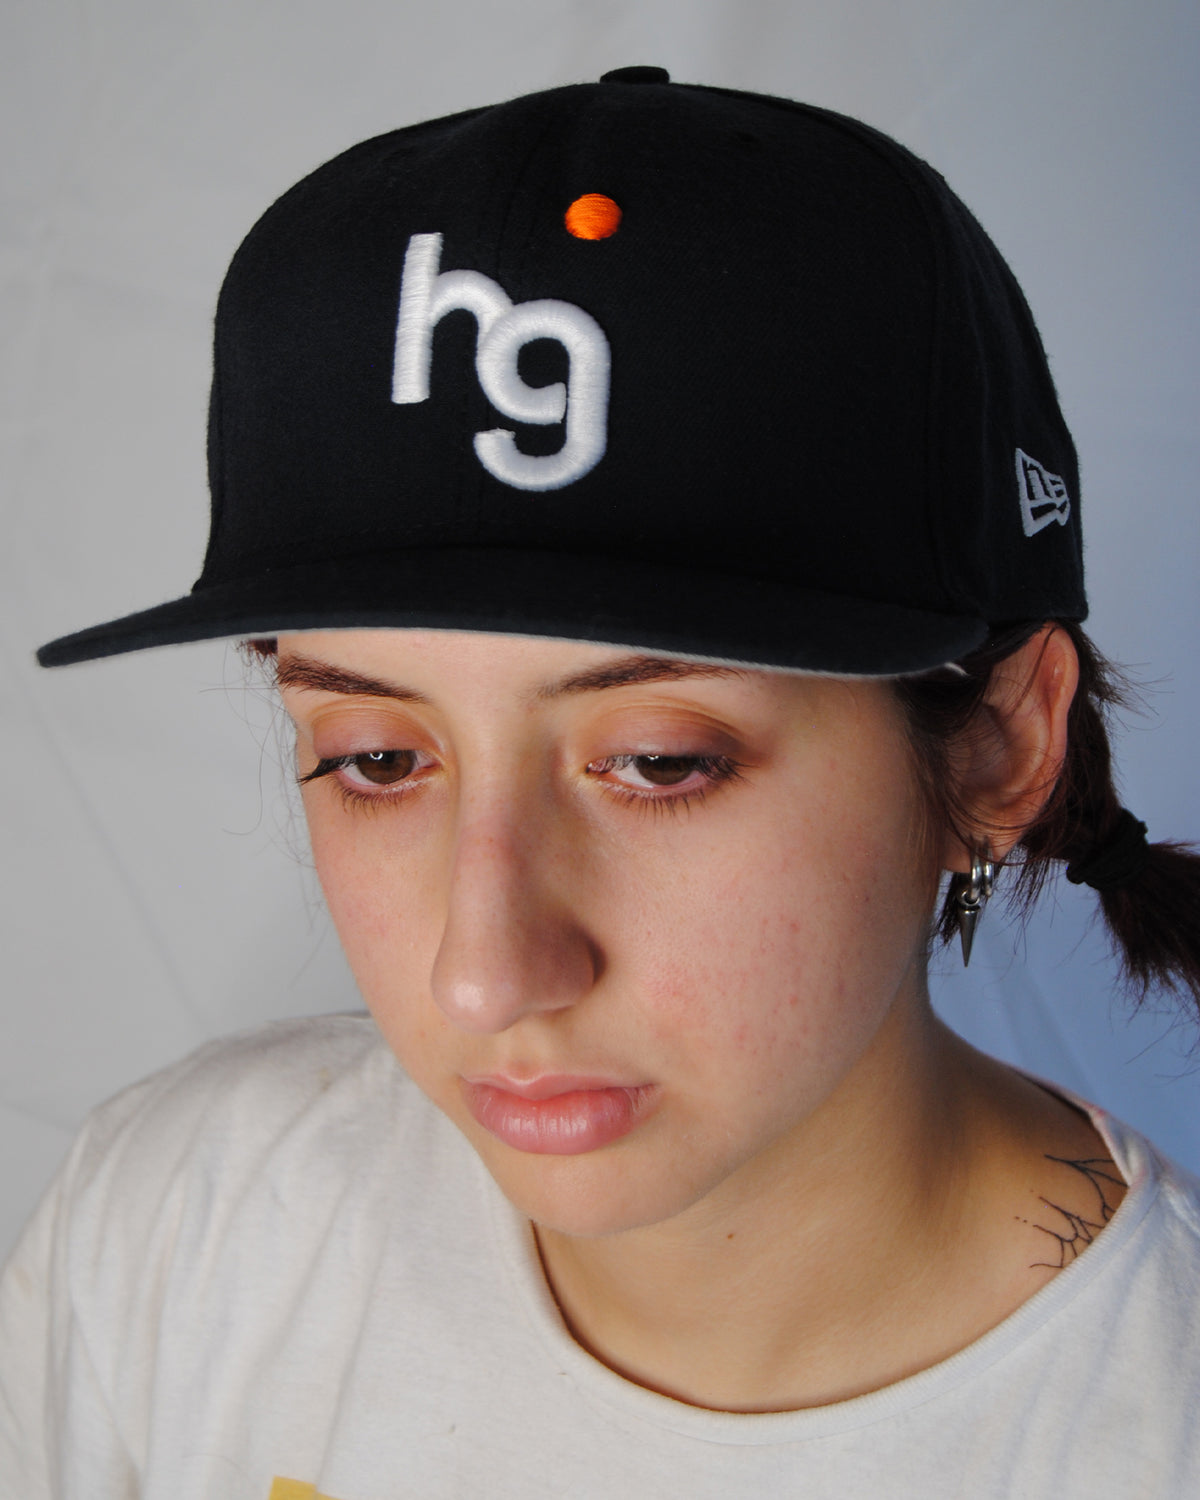 HG Logo Vtg New Era Fitted Cap